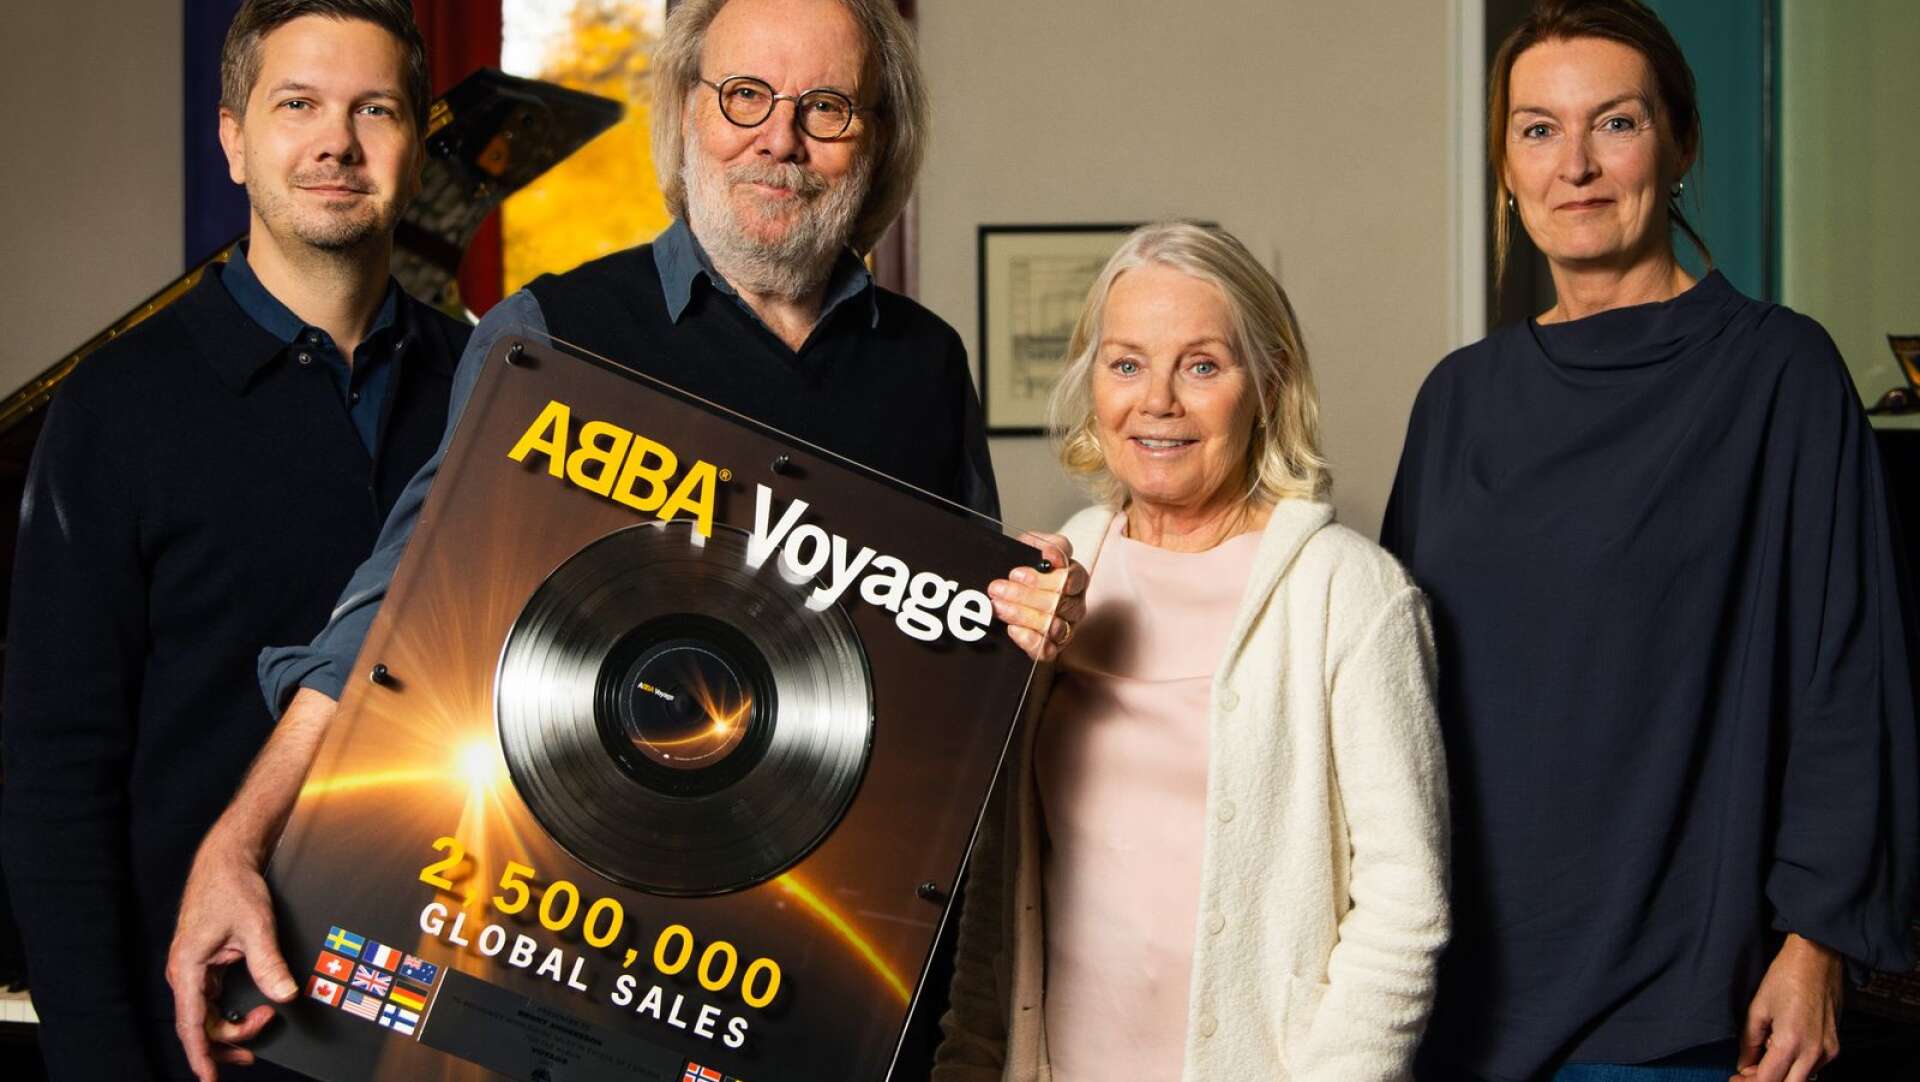 Guldskiva för ”Voyager”. Joakim Johansson (VD Universal Music Sweden), Benny Andersson, Görel Hanser (Abbas manager) och Mia Segolsson (GM Polar Music International AB)